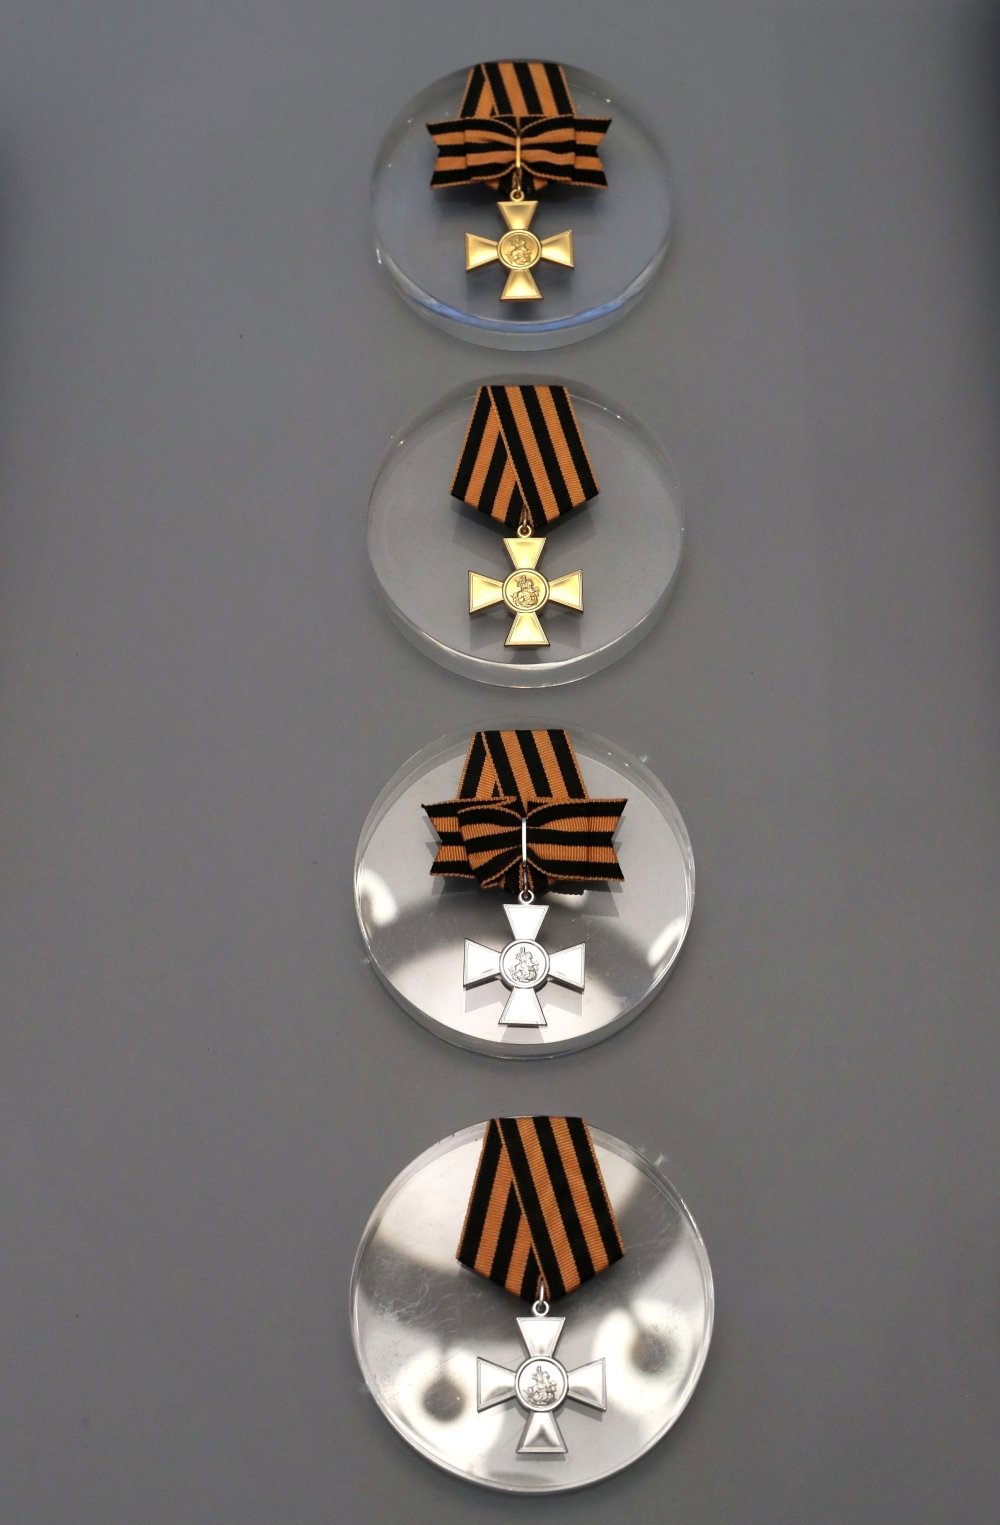 Знак отличия Военного ордена Св. Георгия - Георгиевские кресты первой, второй, третьей и четвертой степеней. Фото: Виталий Белоусов / РИА Новости